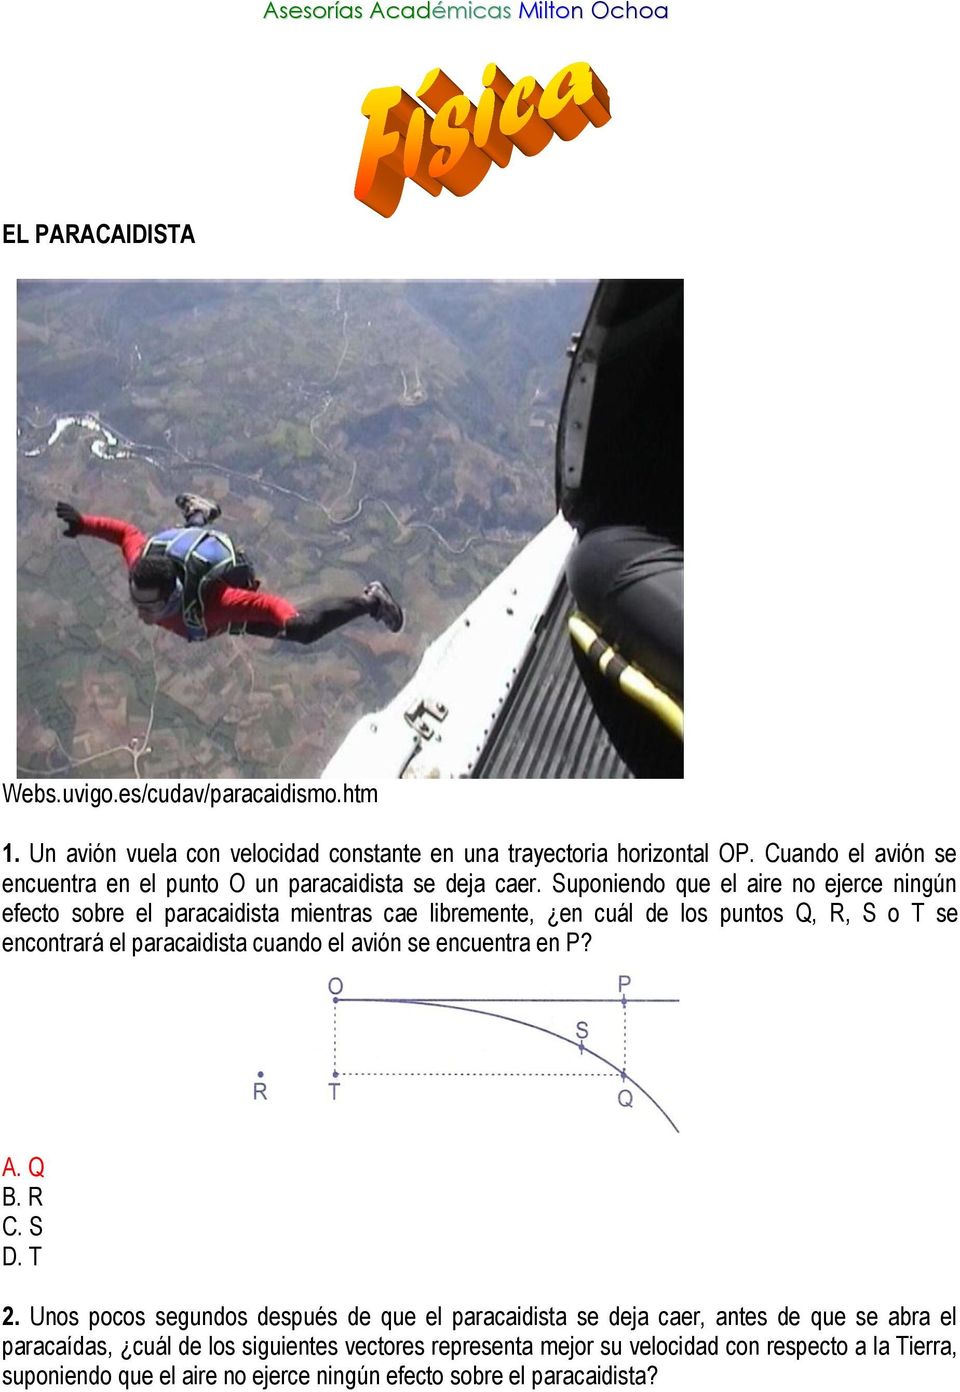 Suponiendo que el aire no ejerce ningún efecto sobre el paracaidista mientras cae libremente, en cuál de los puntos Q, R, S o T se encontrará el paracaidista cuando el